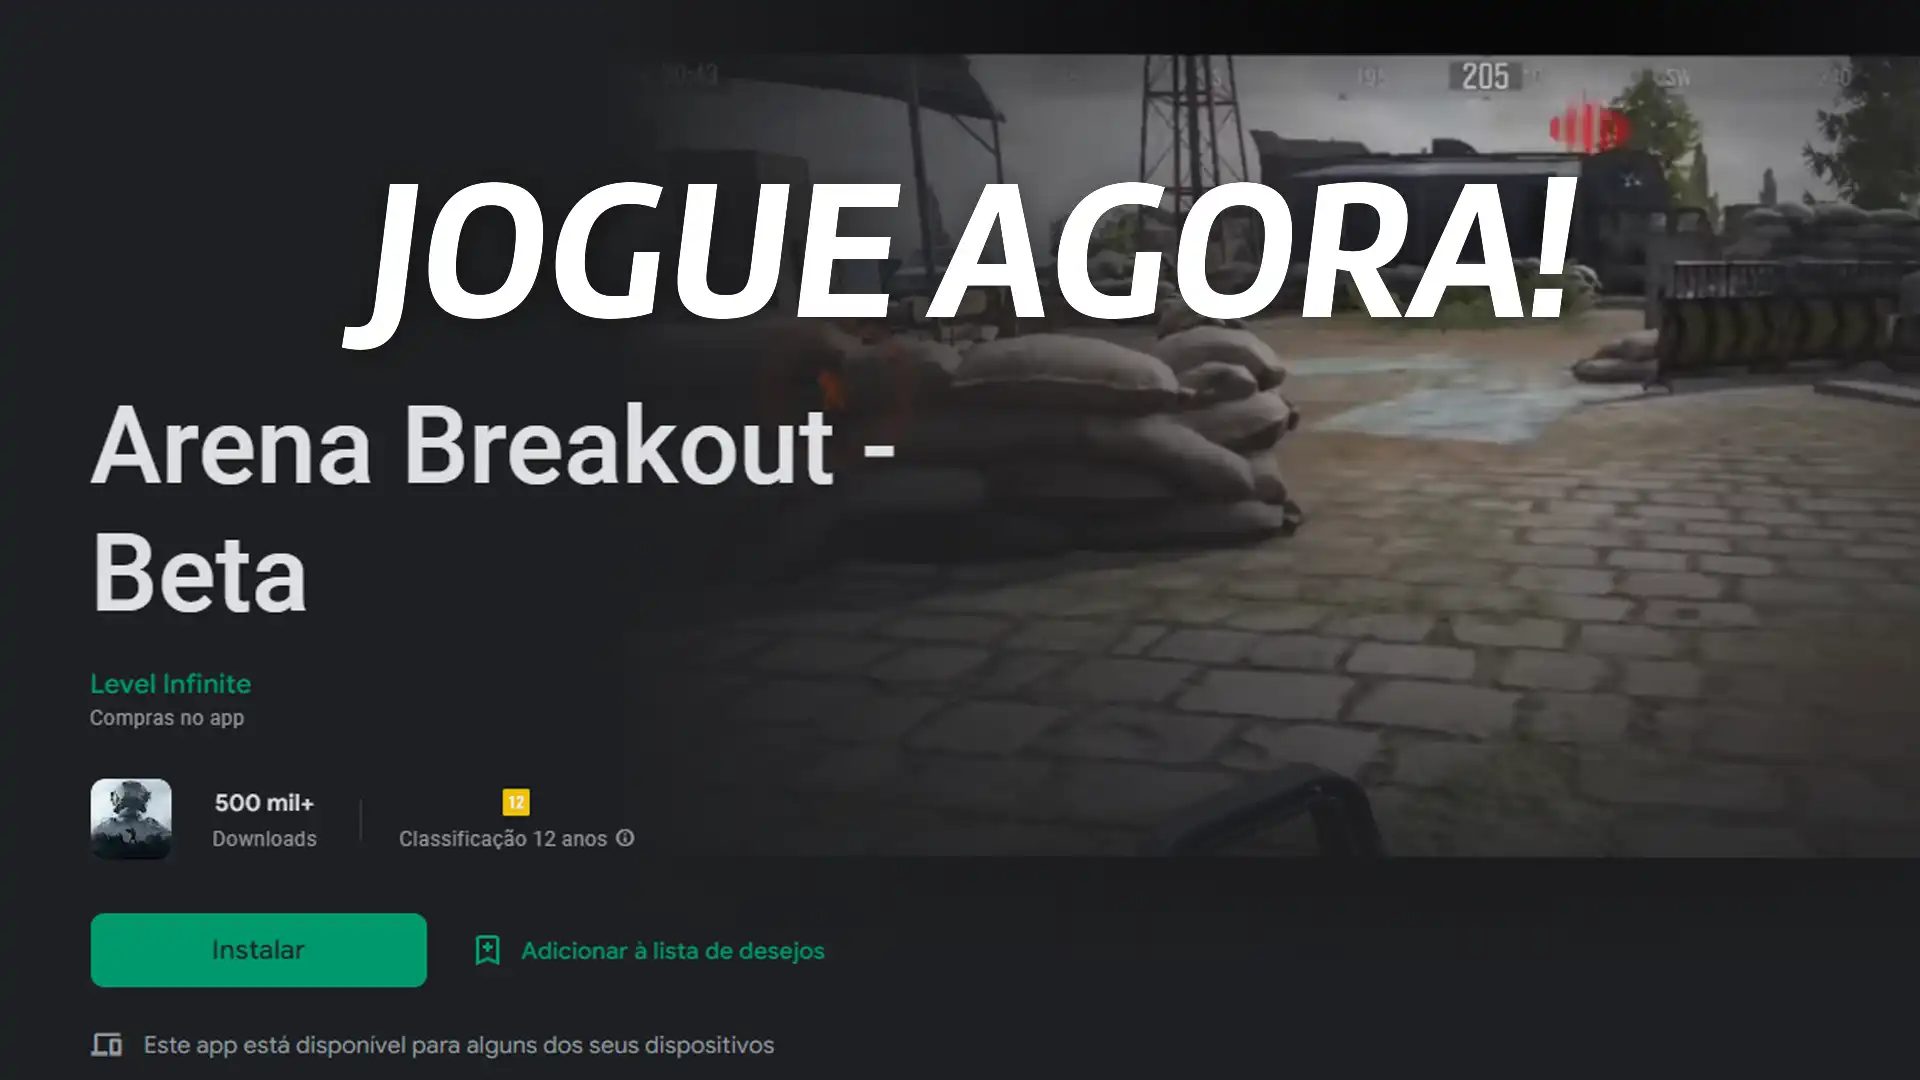 Arena Breakout - Beta global